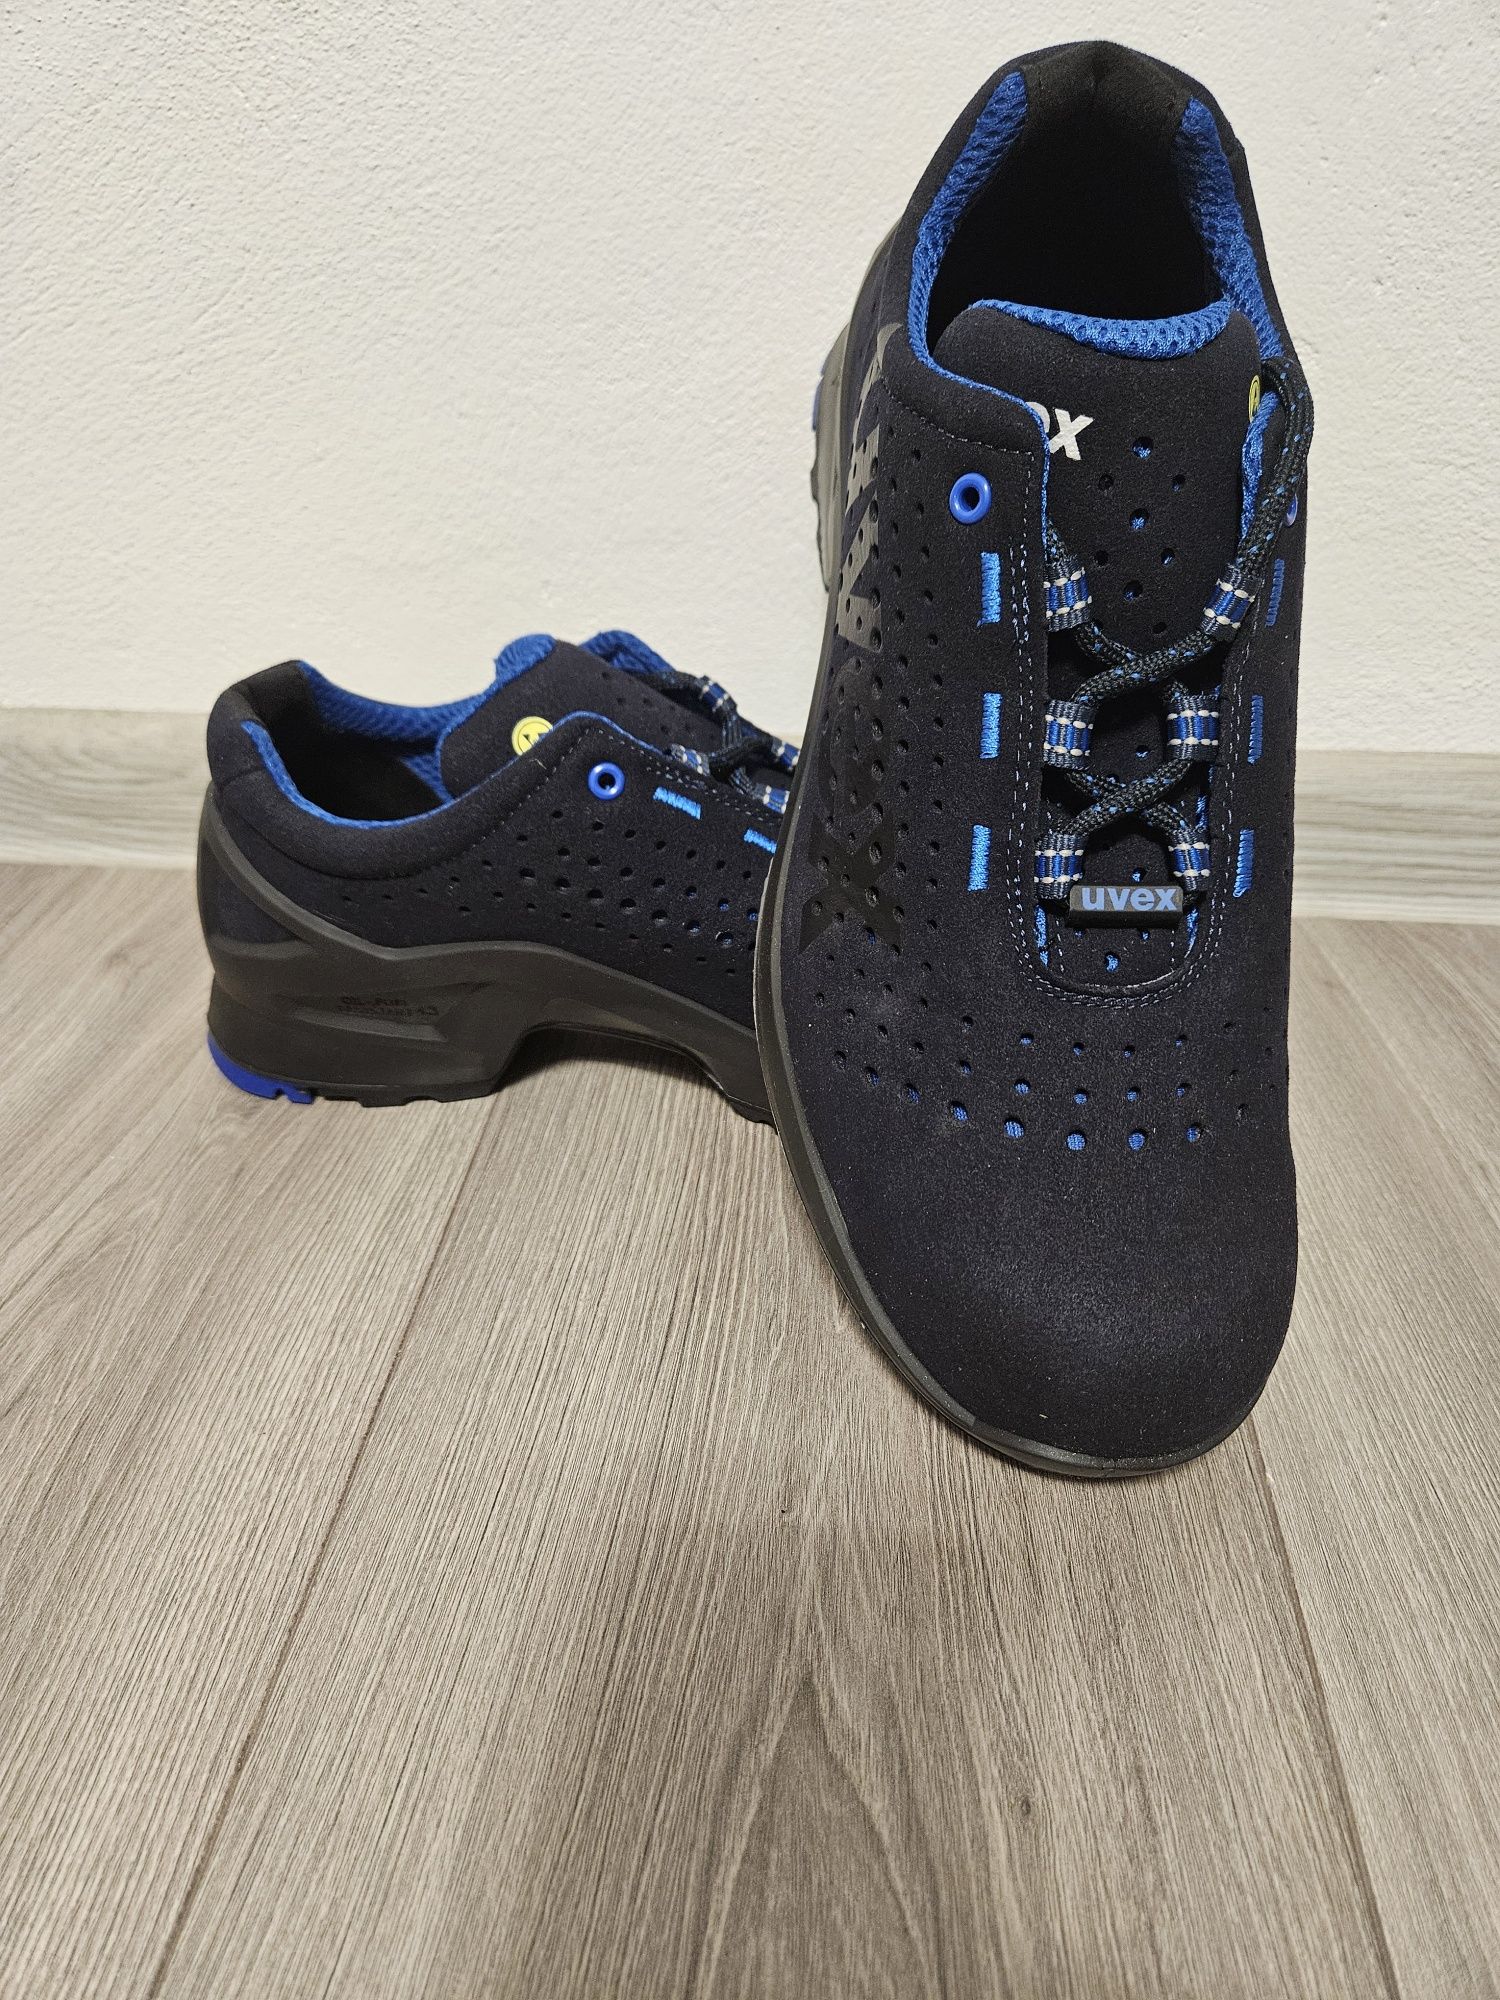 Pantofi de protectie perforati uvex 1 S1 SRC 85318